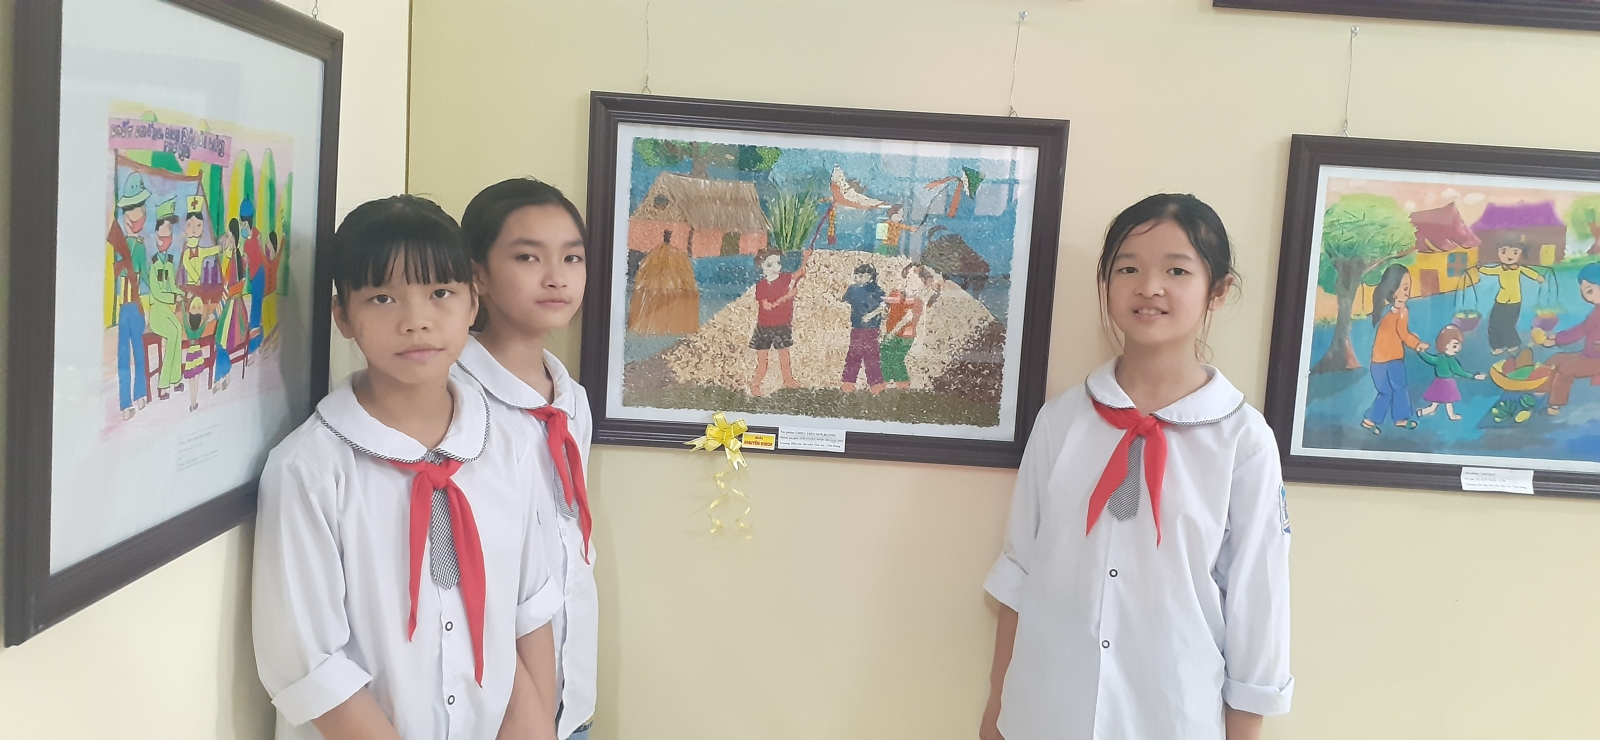 Bắc Giang: Triển lãm trưng bày tranh thiếu nhi “Sắc màu tuổi thơ” năm 2020 - Ảnh minh hoạ 5